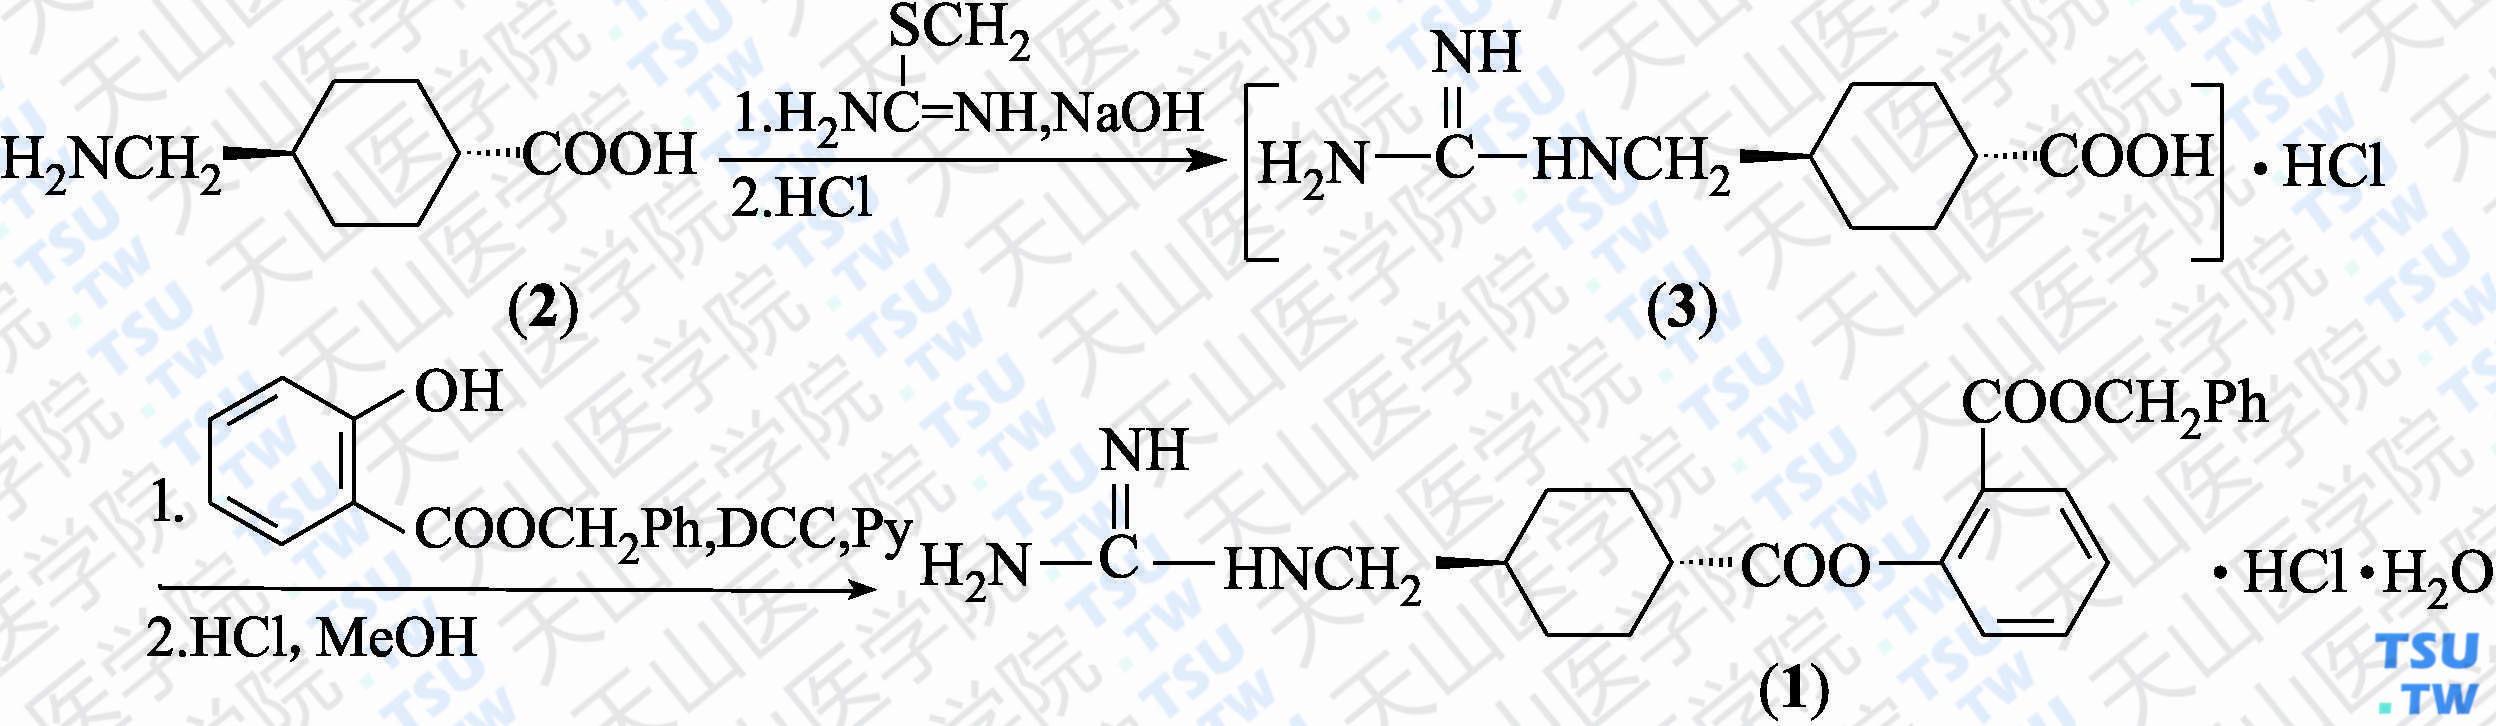 盐酸贝奈克酯（分子式：C<sub>23</sub>H<sub>28</sub>ClN<sub>3</sub>O<sub>4</sub>·HCl·H<sub>2</sub>O）的合成方法路线及其结构式